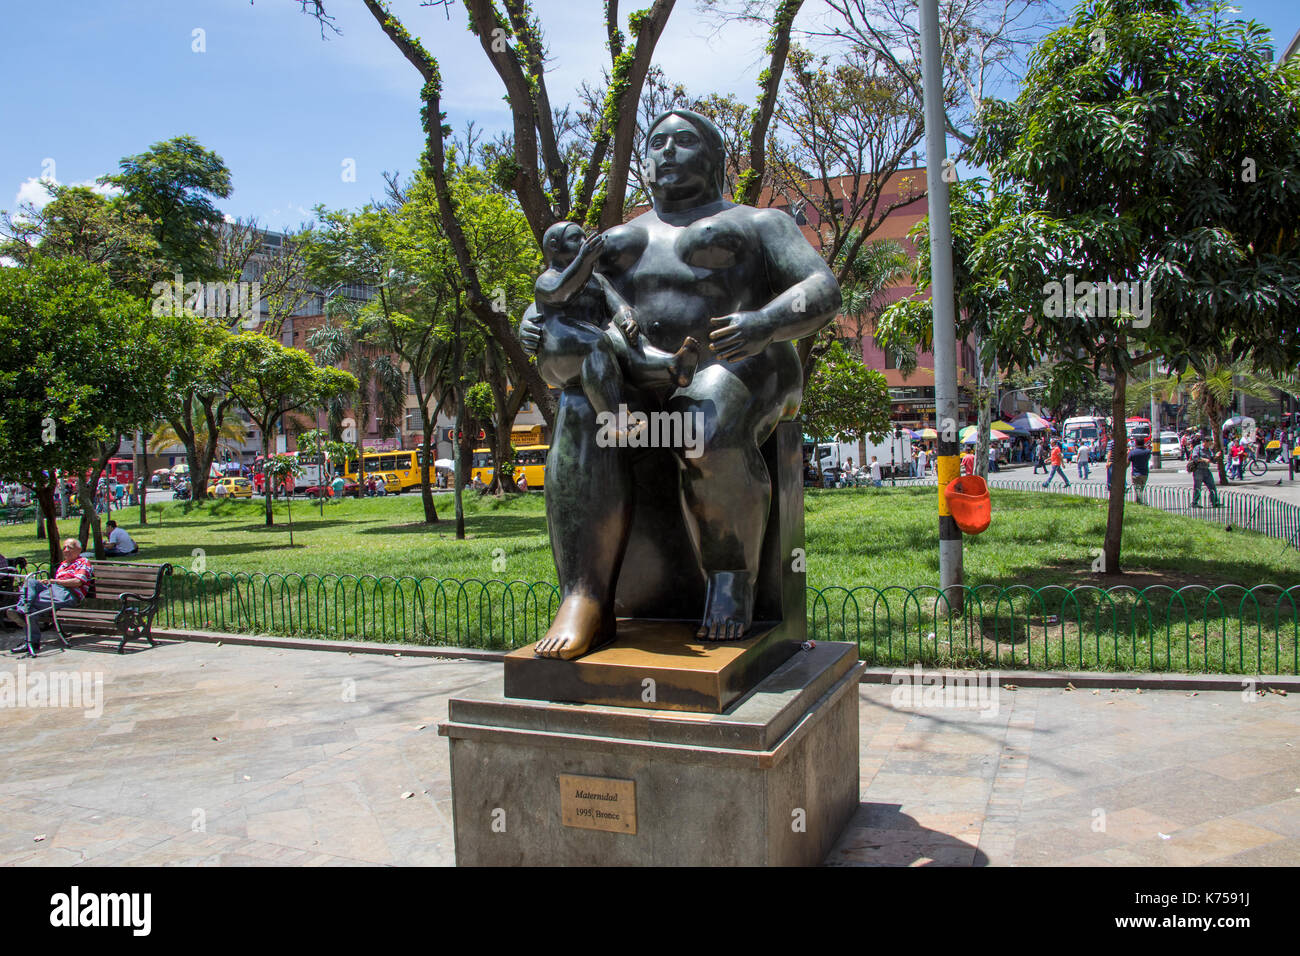 La Maternidad sculpture, Botero Plaza, Medellin, Colombia Stock Photo